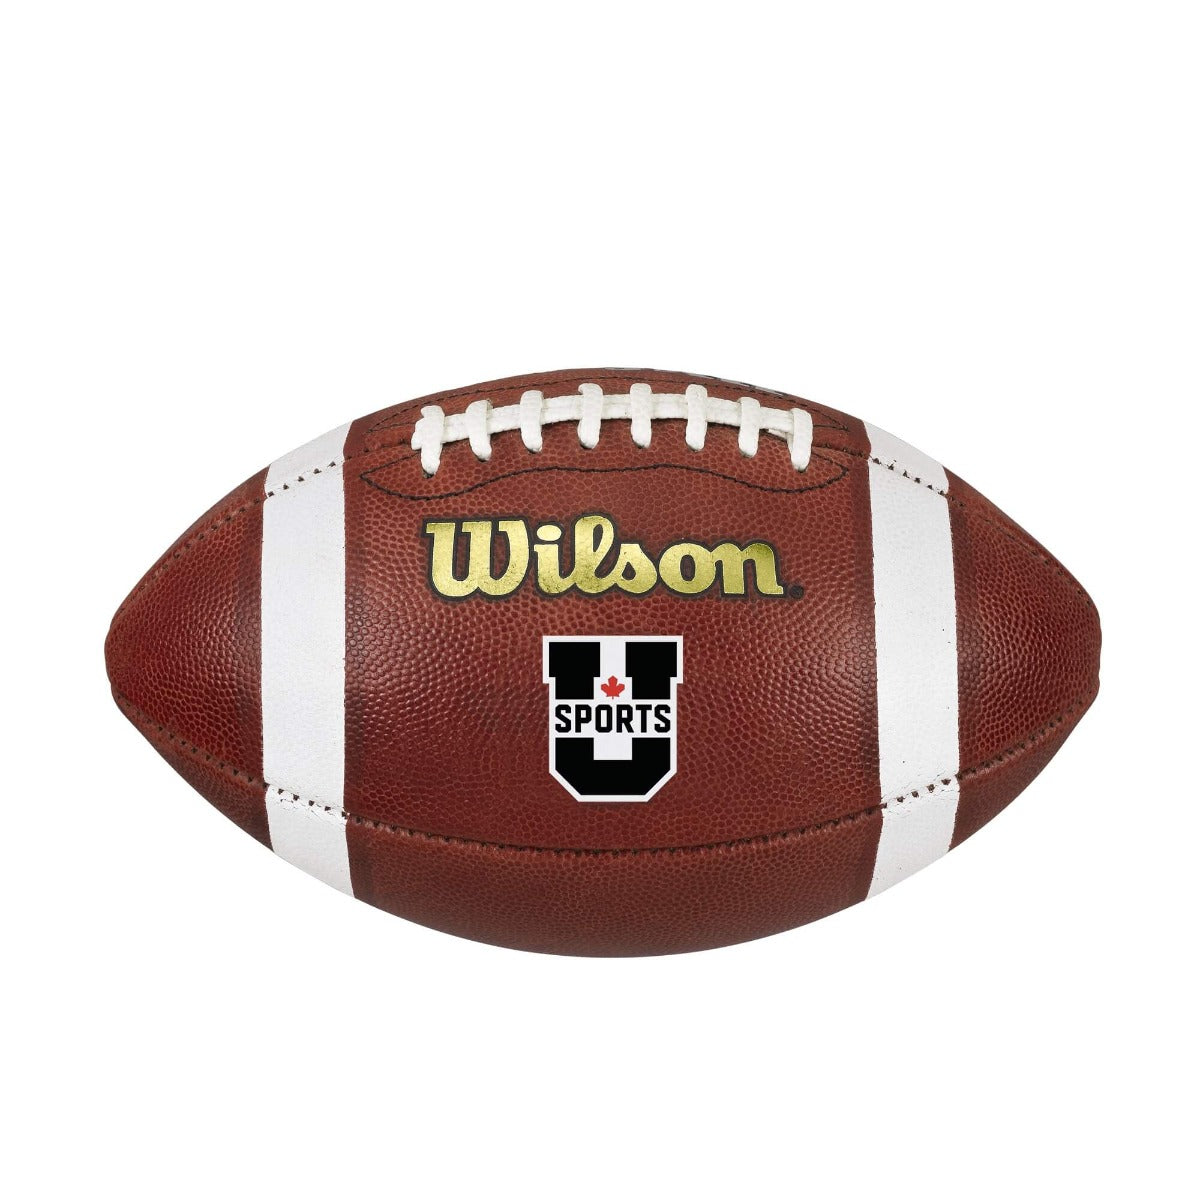 Wilson USport Football Game Ball